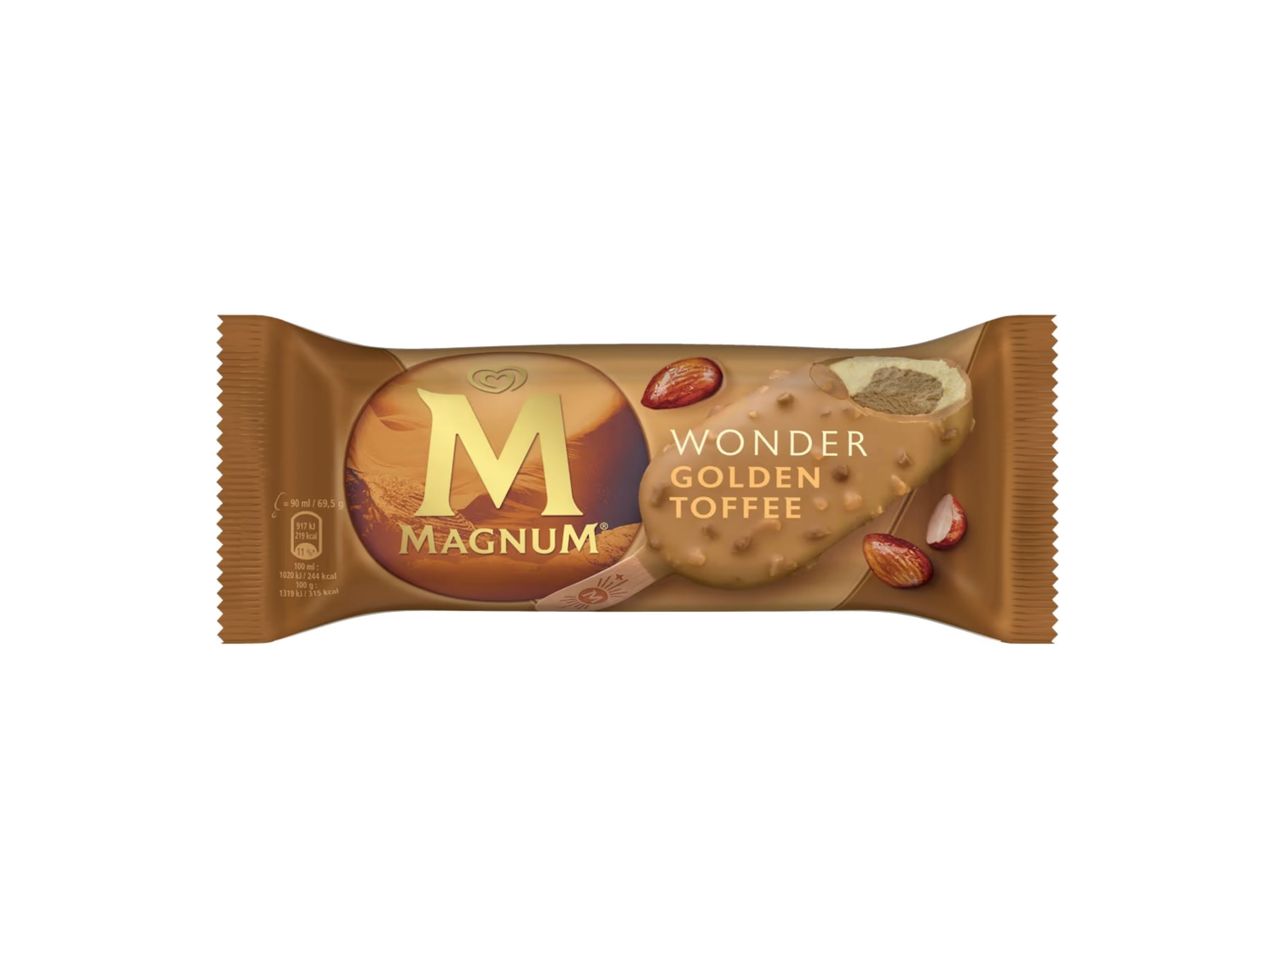 Mene koko näytön tilaan: Magnum Wonder Golden Toffee - Kuva 1